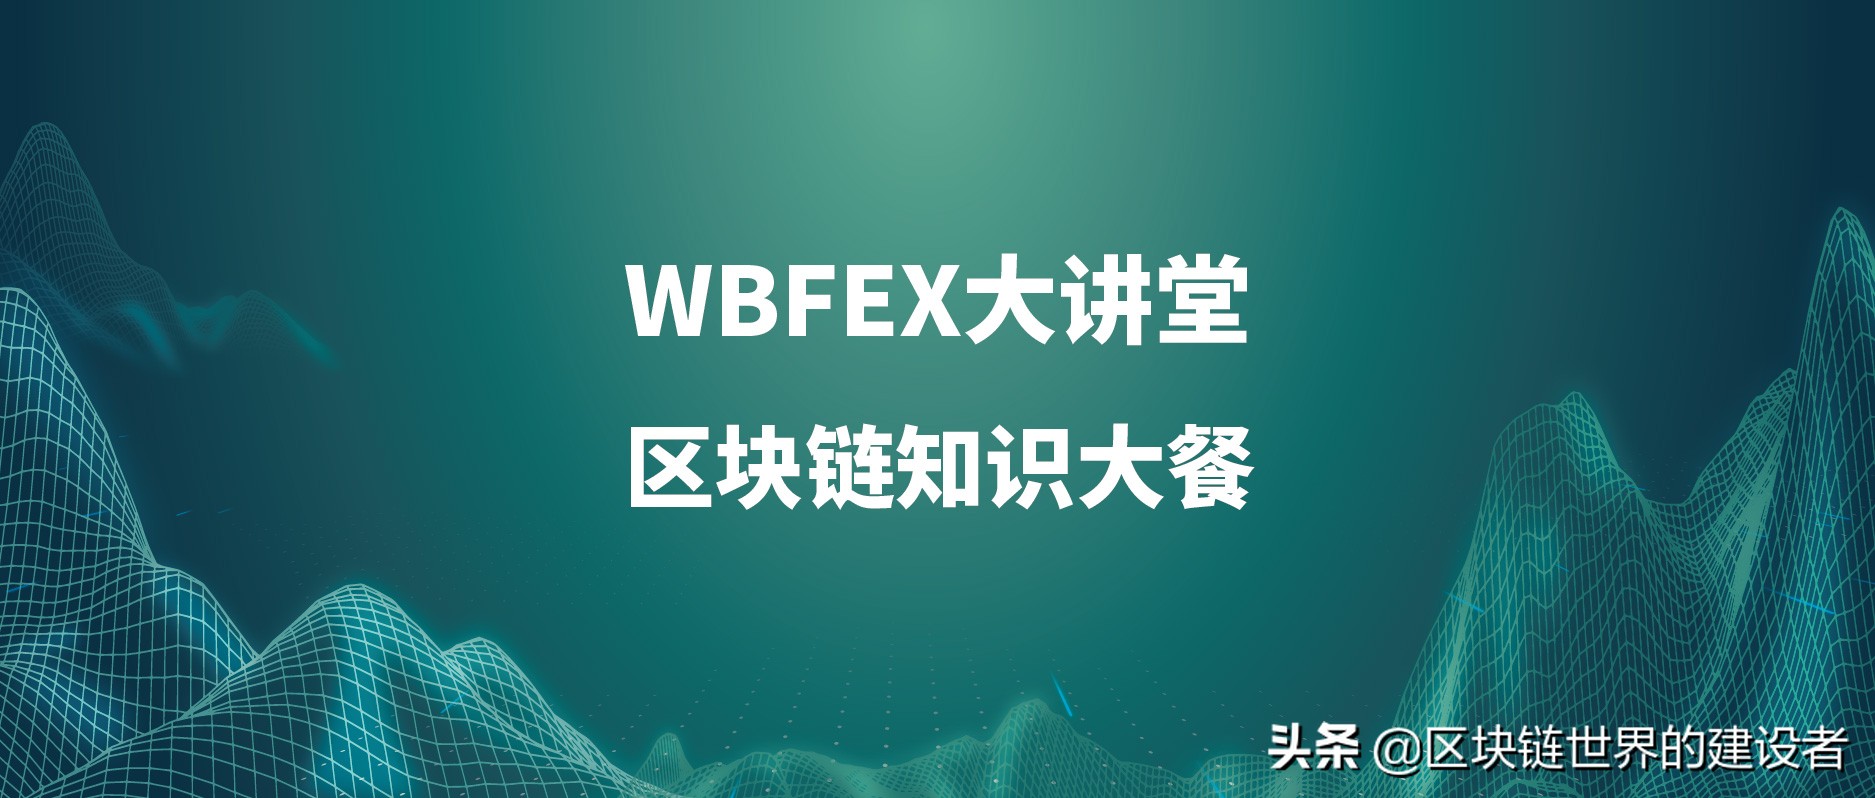 WBFEX大讲堂丨比特币挖矿详解